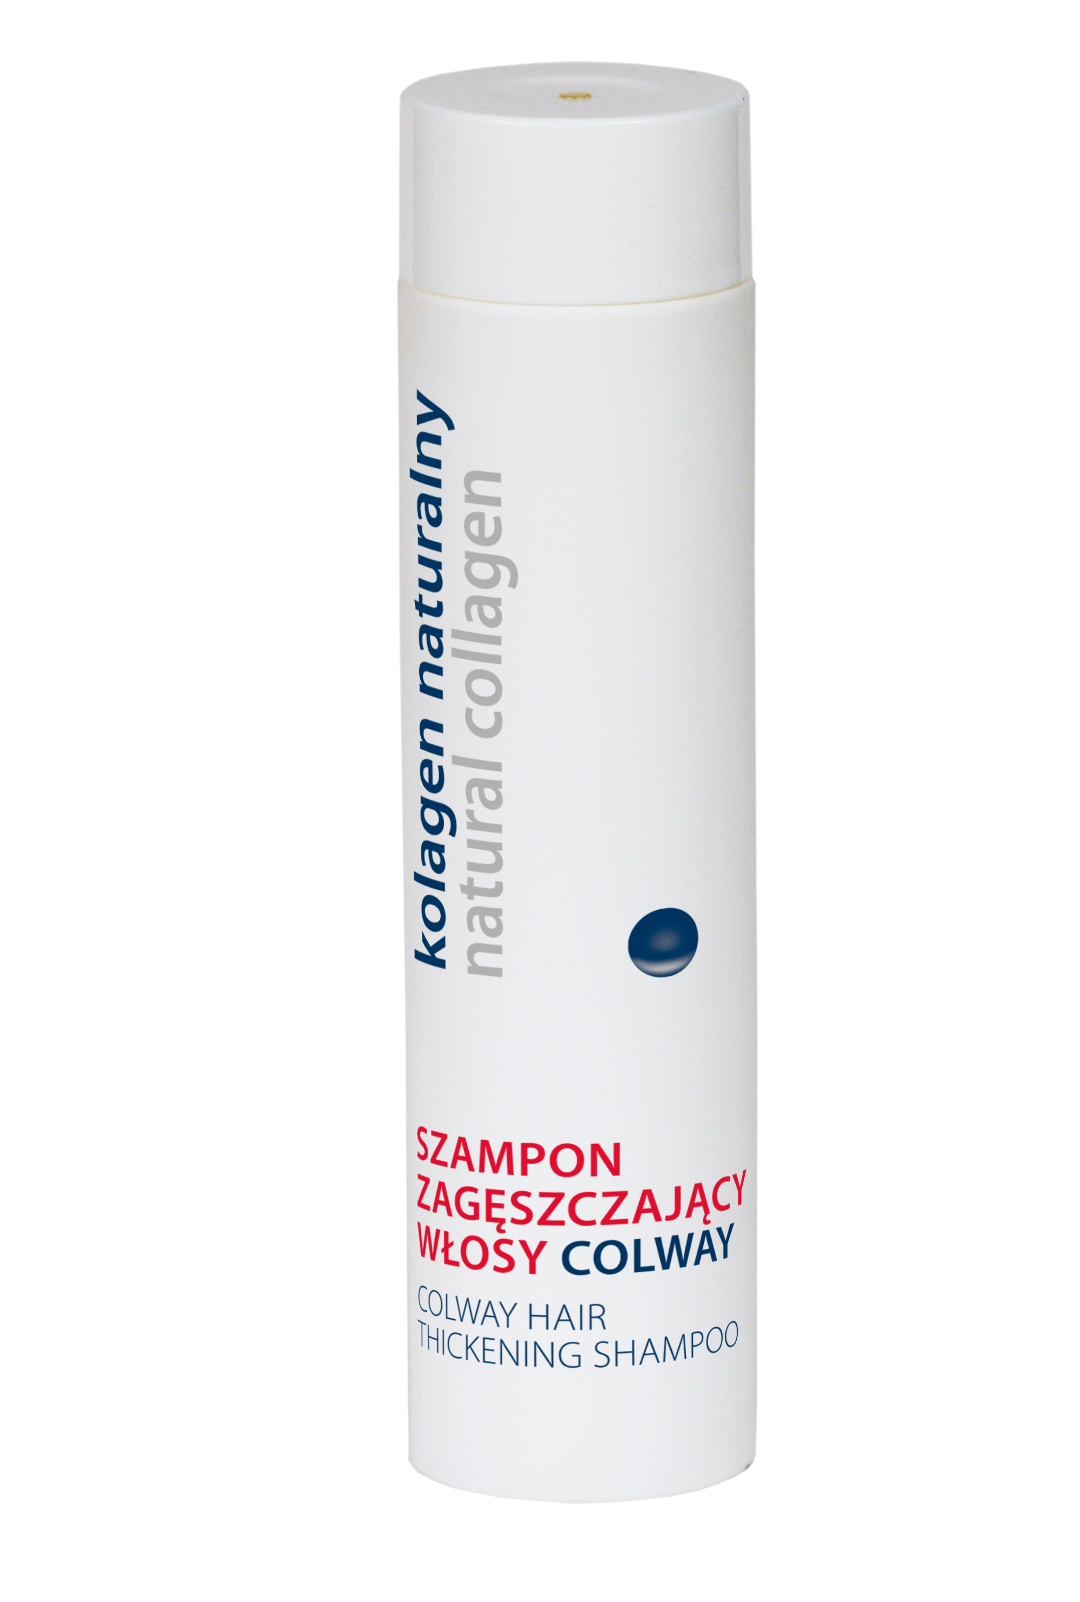 szampon zageszczajacy colway